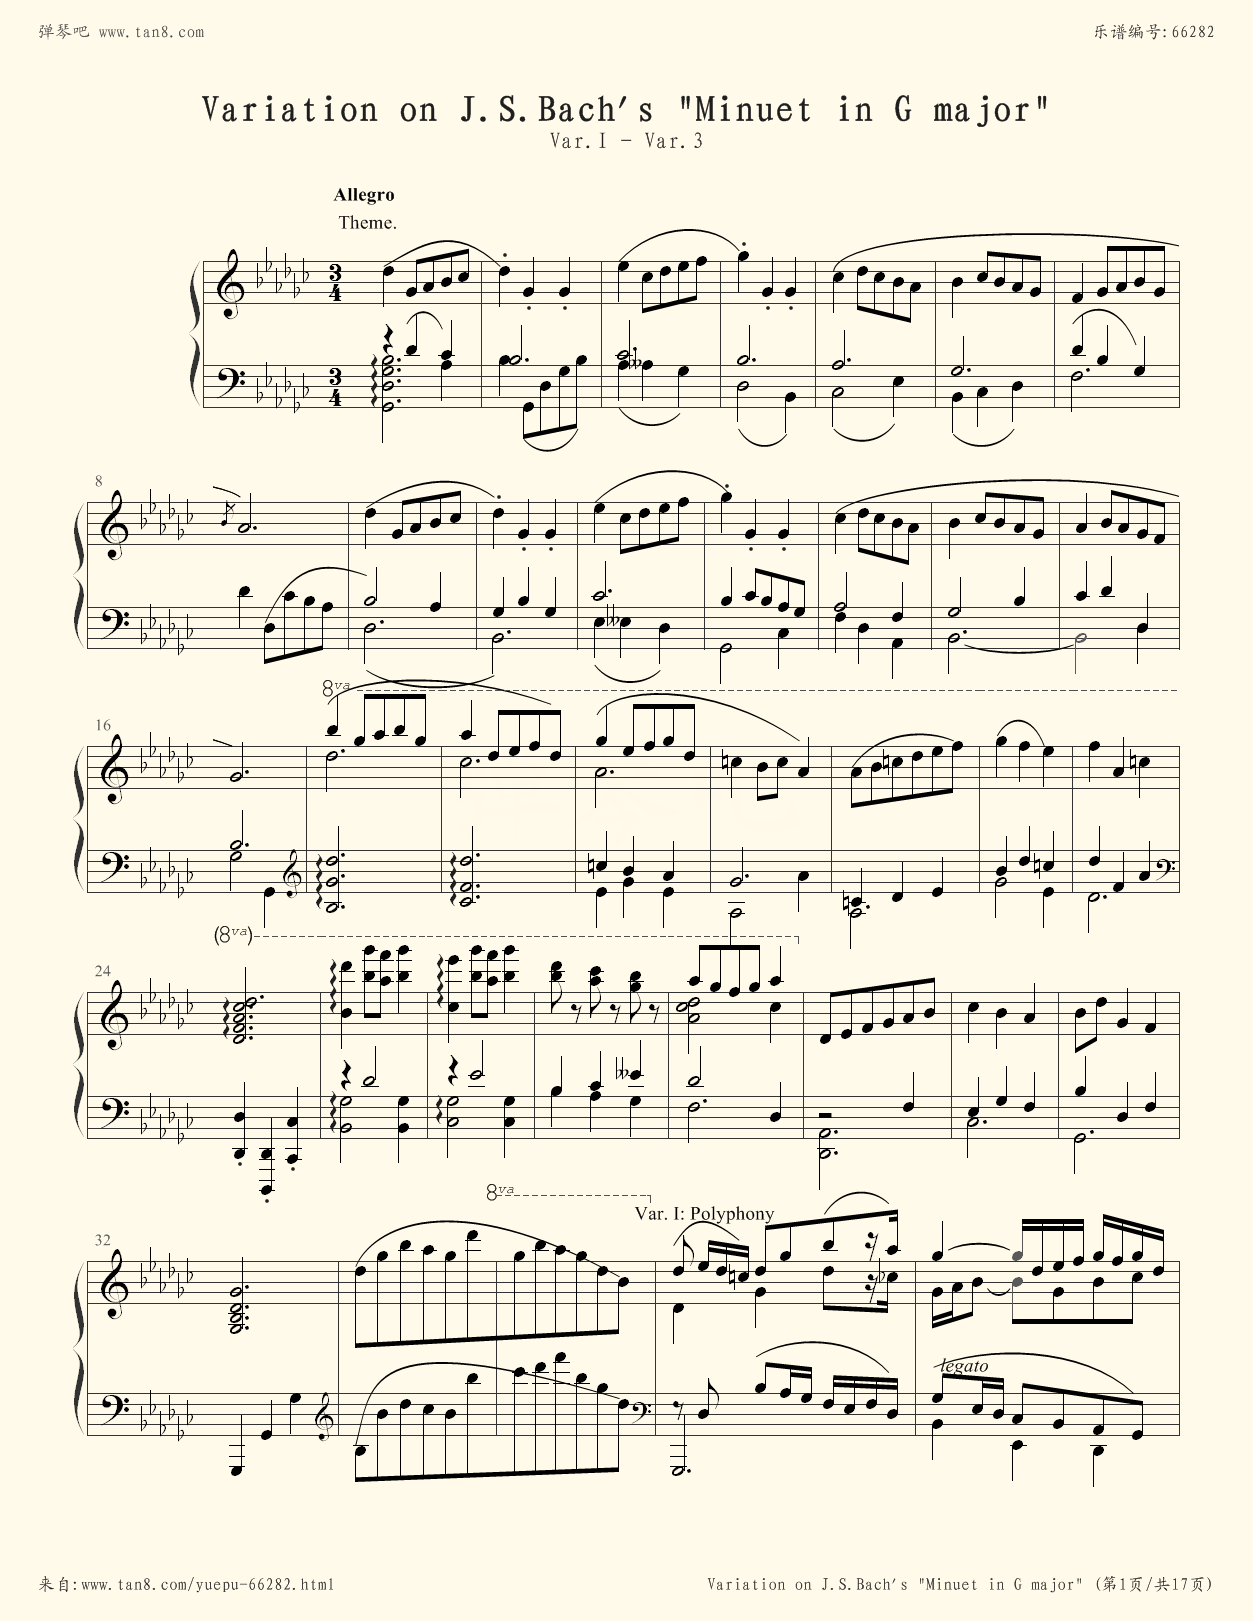 朗朗钢琴演奏会g大调小步舞曲的简单介绍